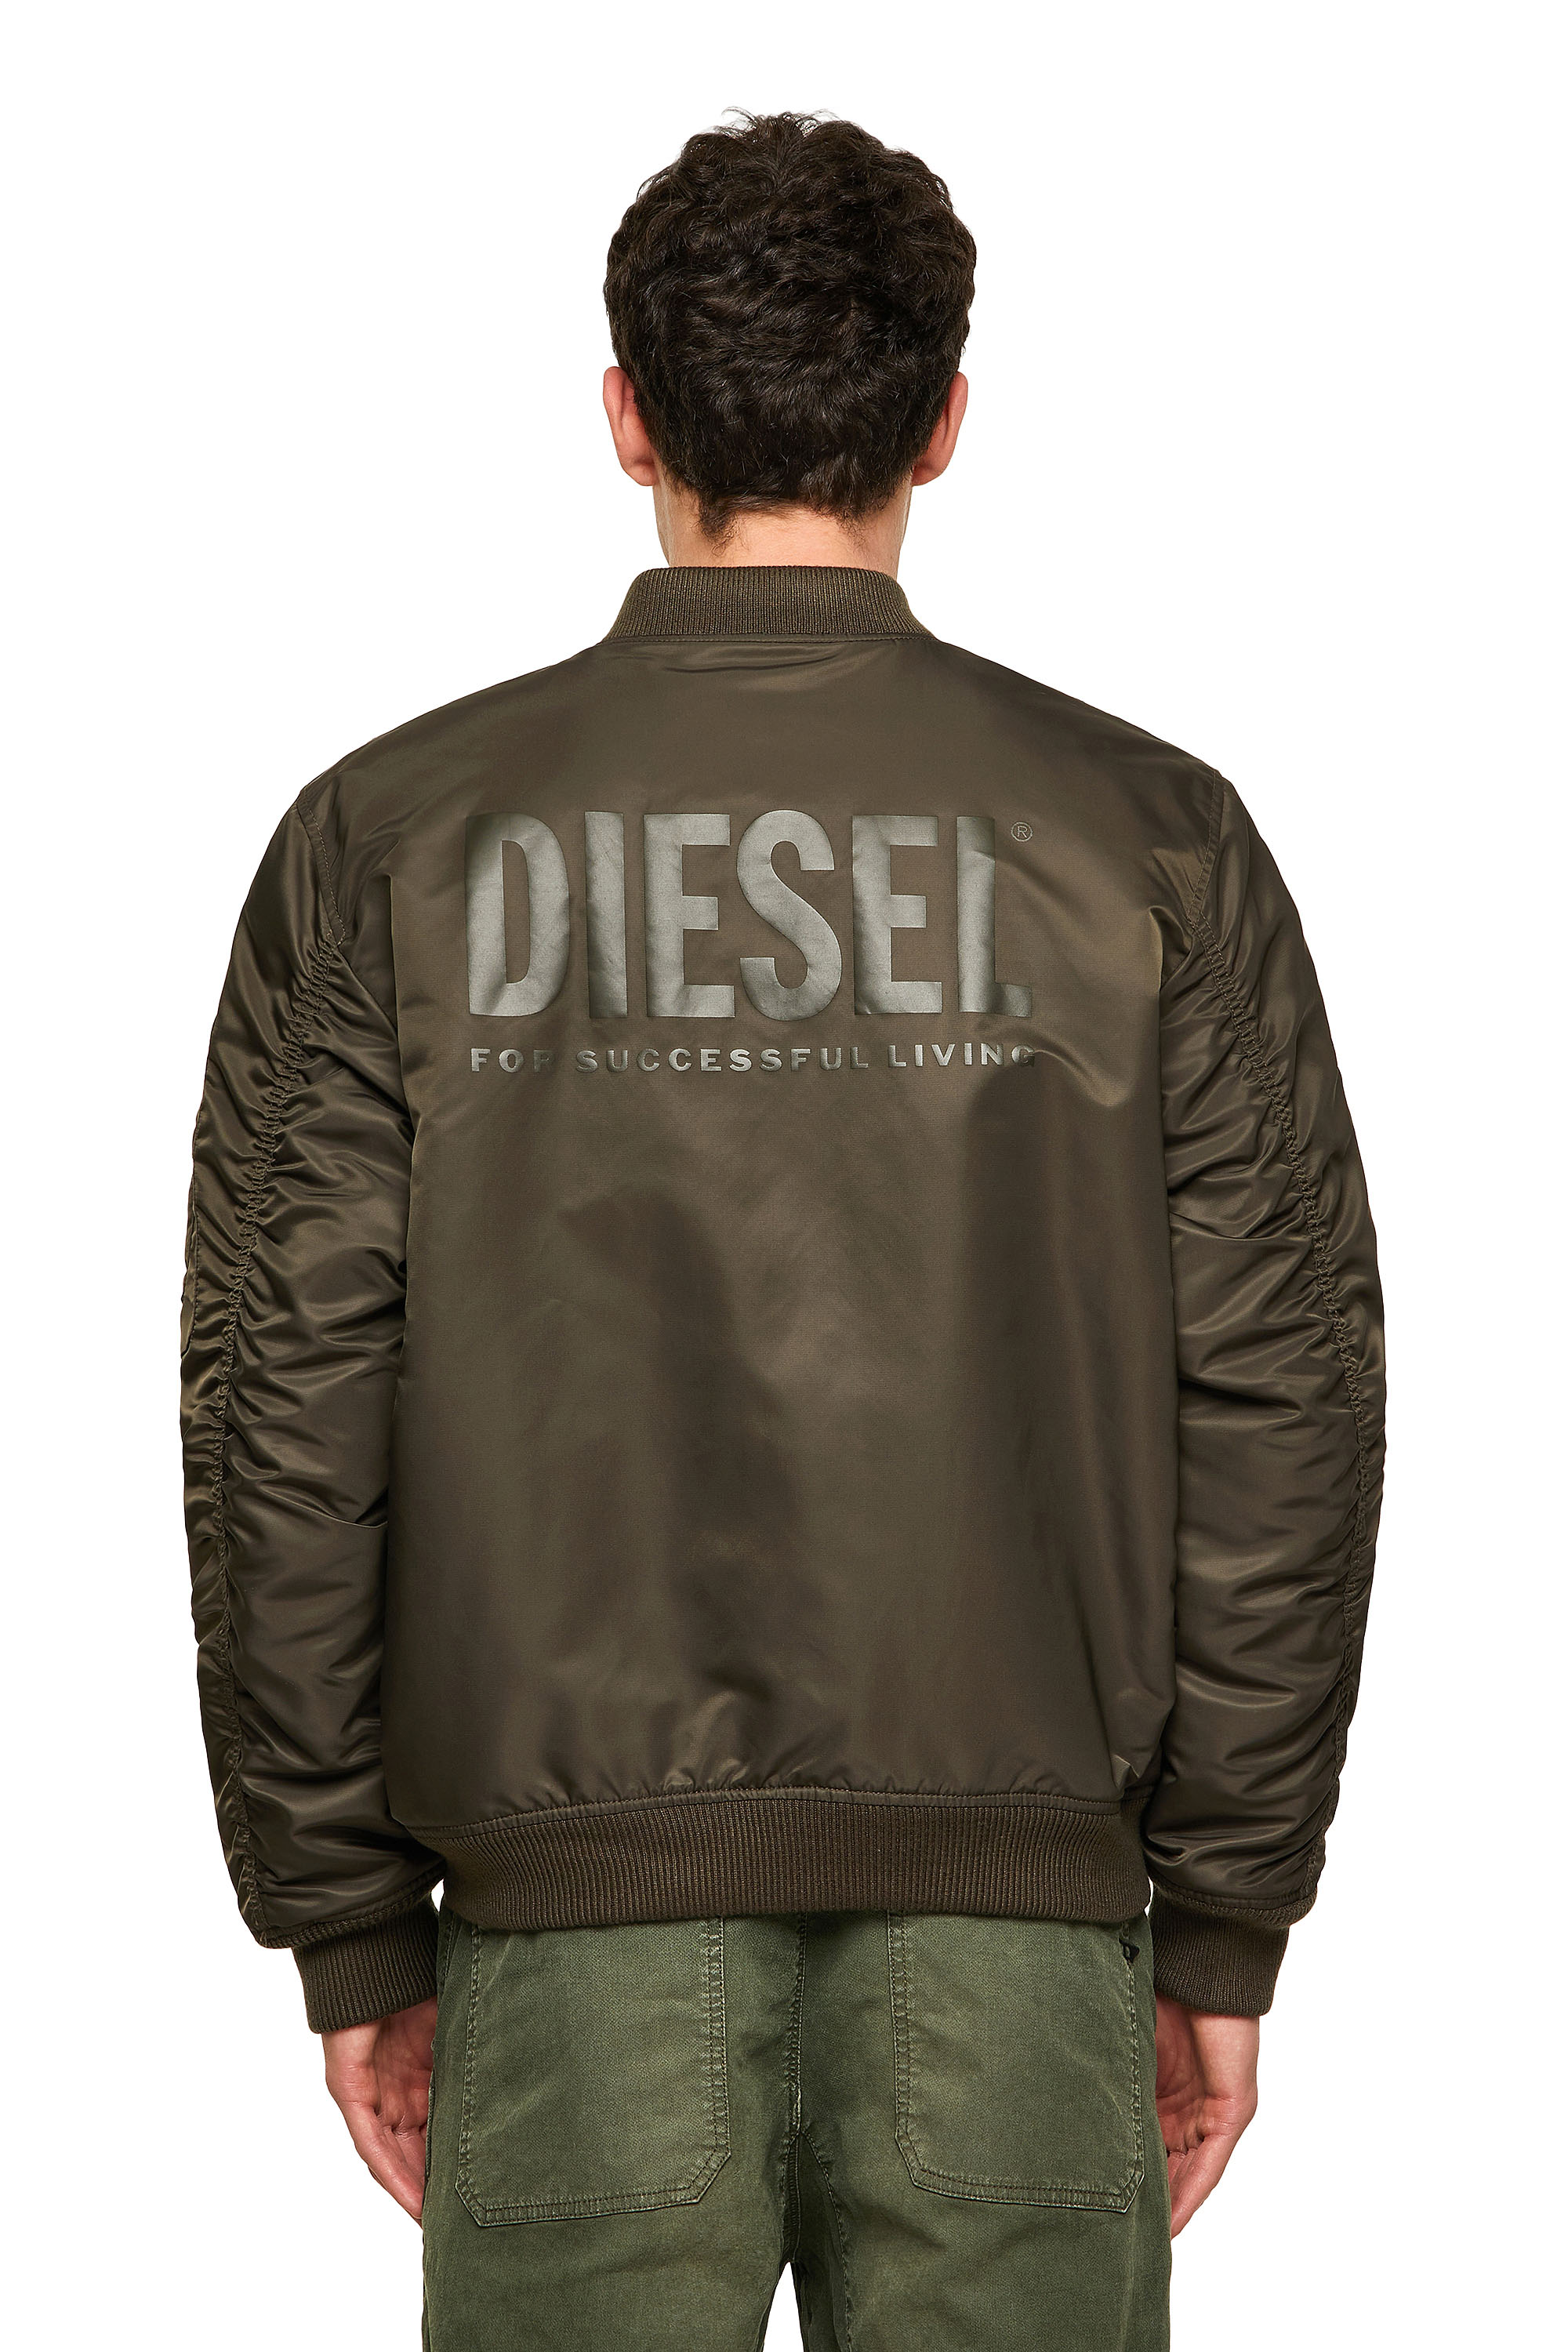 Diesel - J-ROSS-REV-A, Olive Green - Image 2